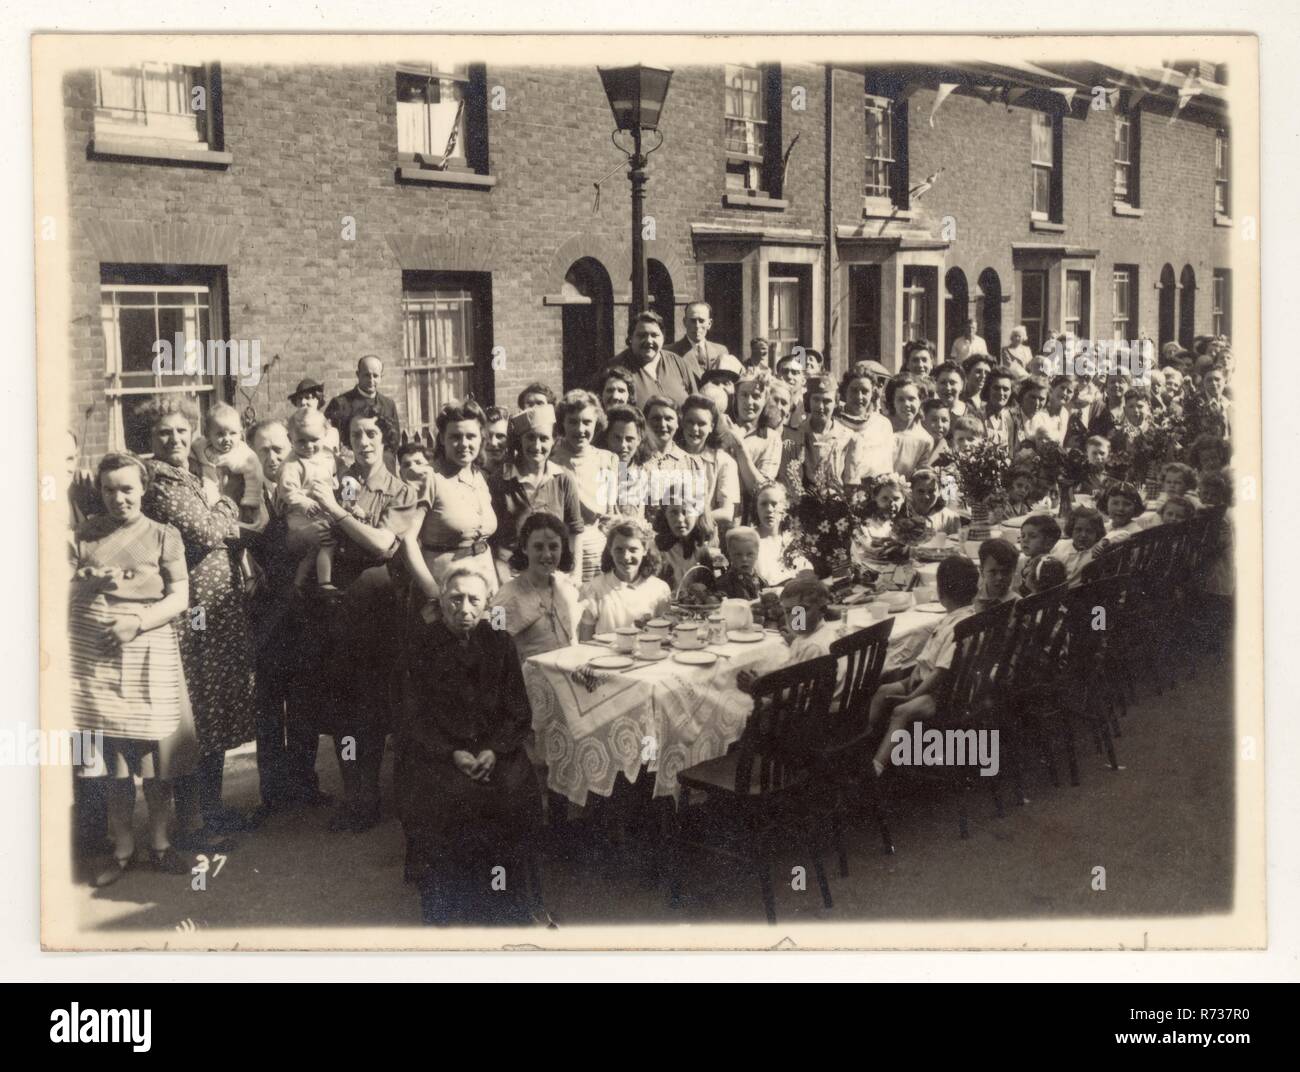 Cartolina originale dell'era WW2 della pace V.E. festa di strada festa di giorno luogo sconosciuto, Regno Unito datato 12 maggio 1945 Foto Stock